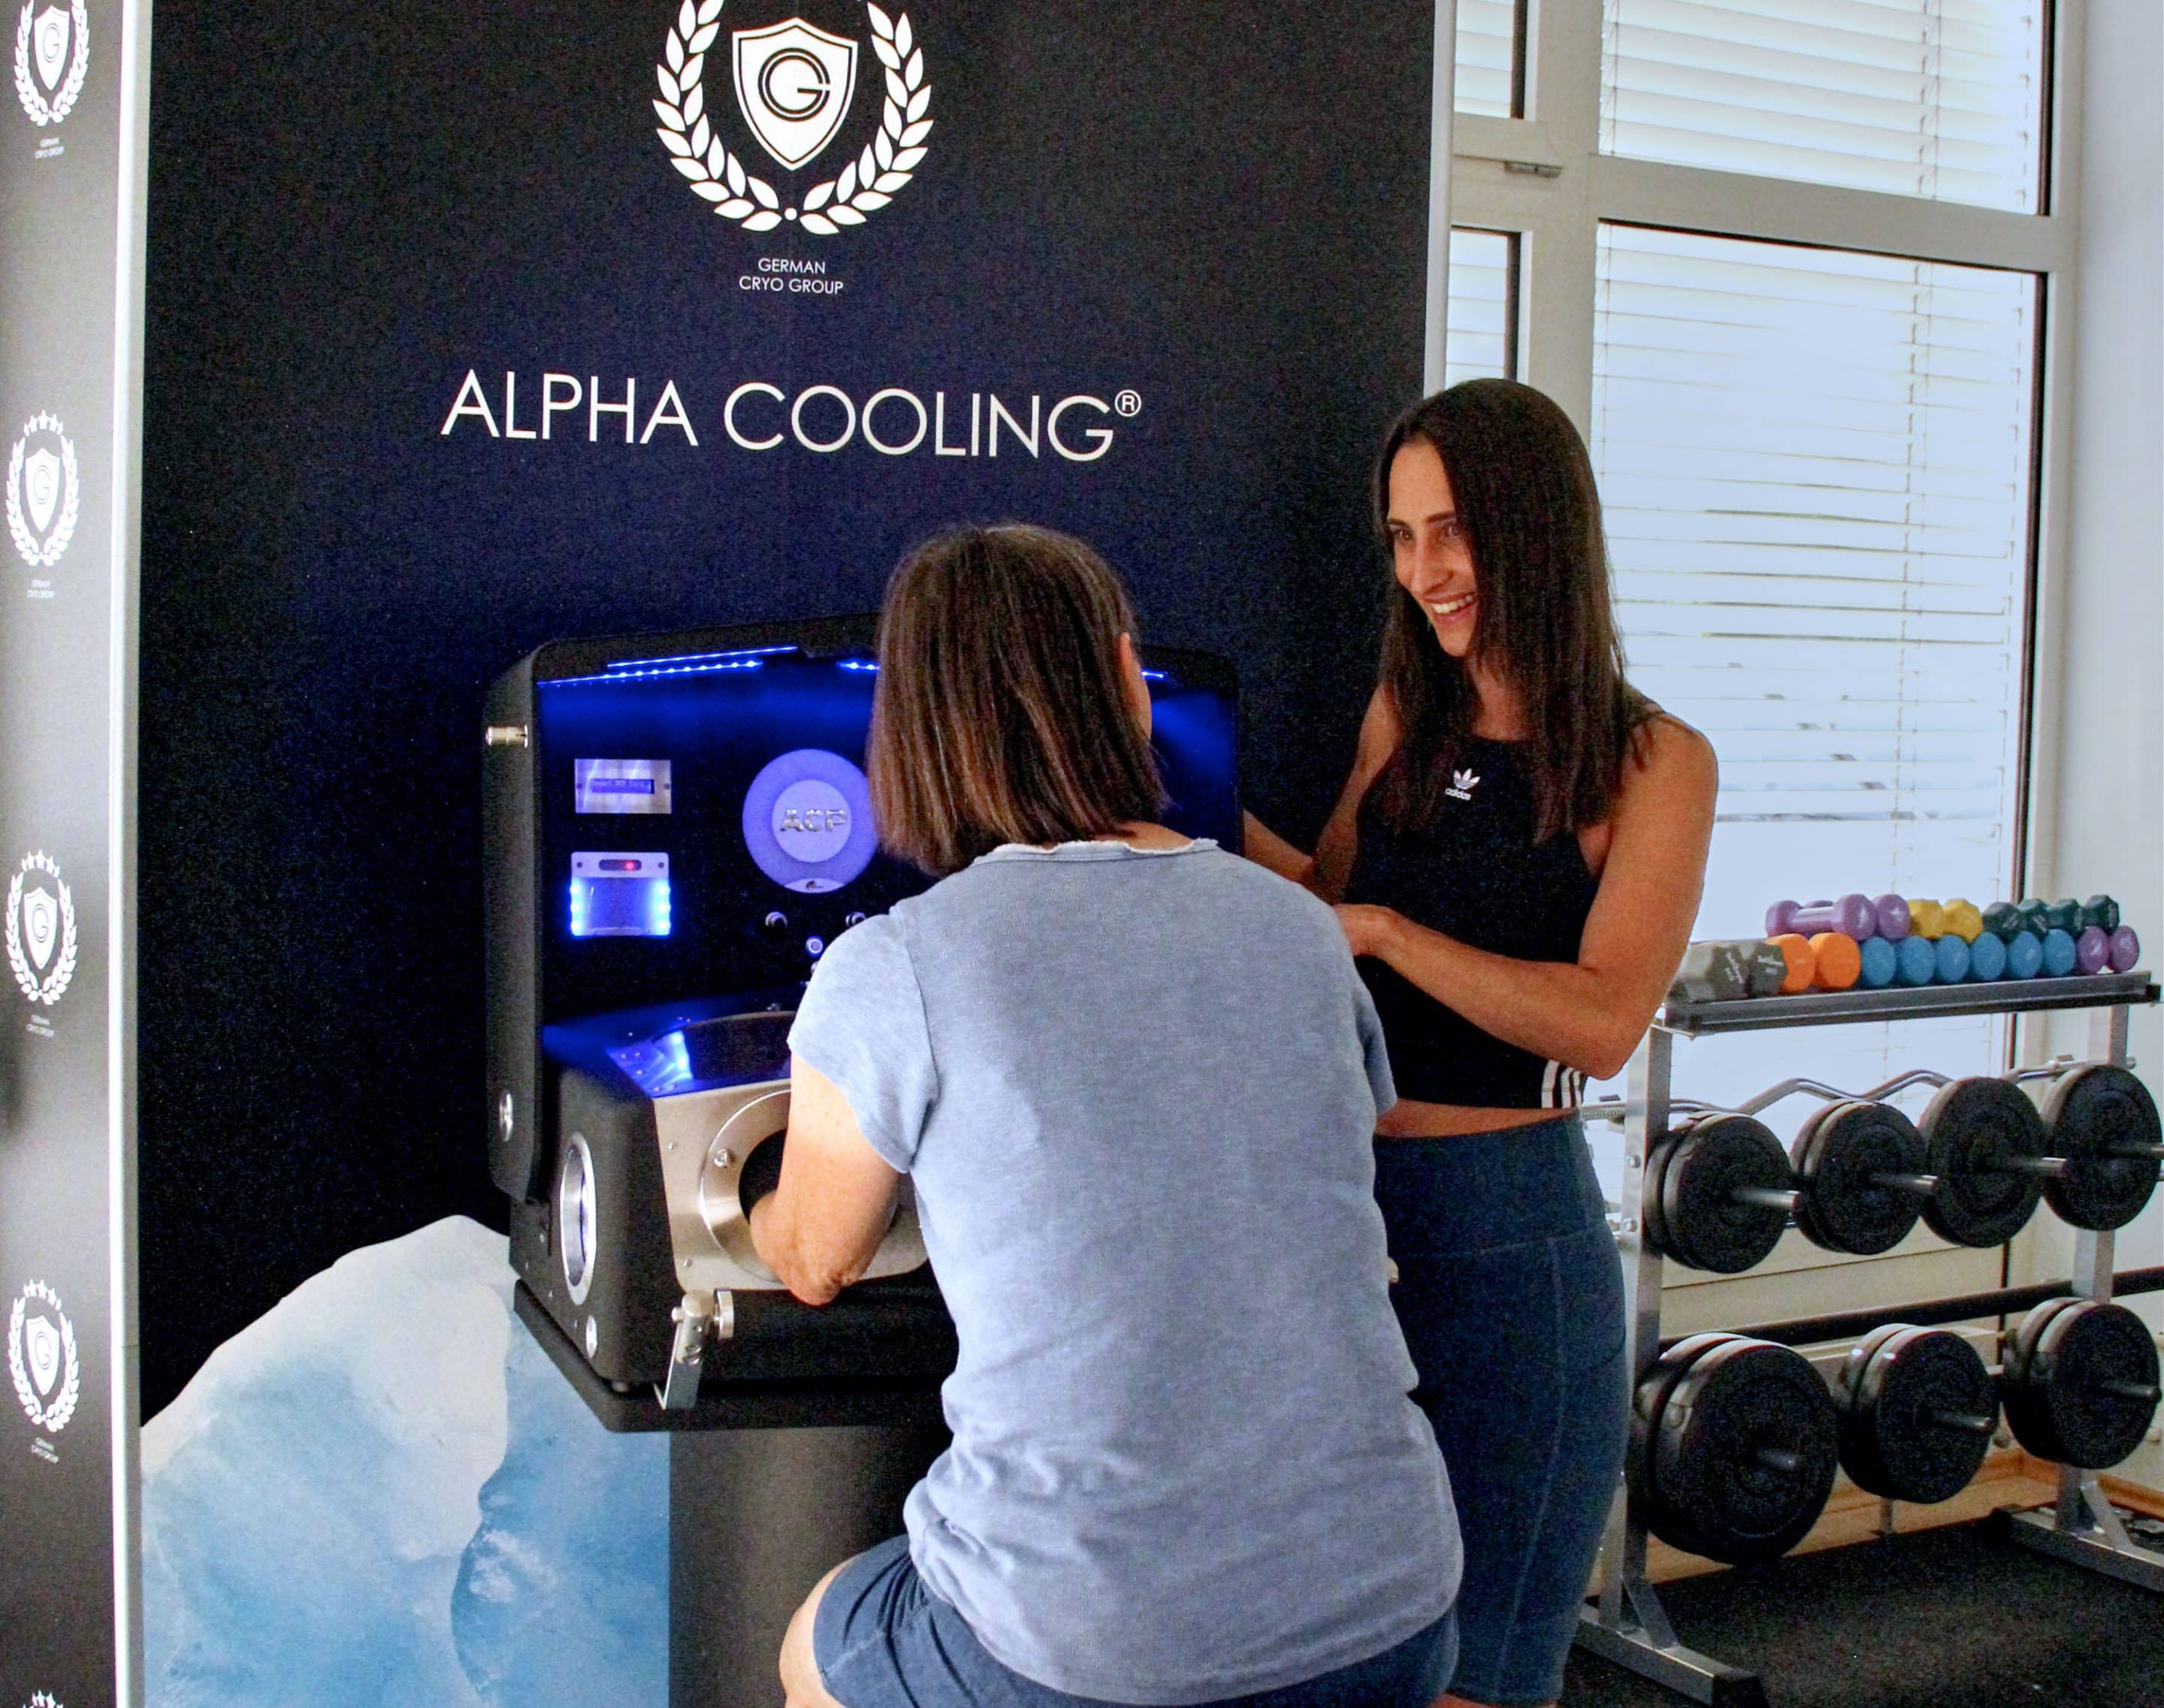 Sporttherapeutin Lisa Schmidt bietet in Leonberg-Warmbronn ab sofort die Kälteanwendung Alpha Cooling Professional an. Foto: Lisa Schmidt.